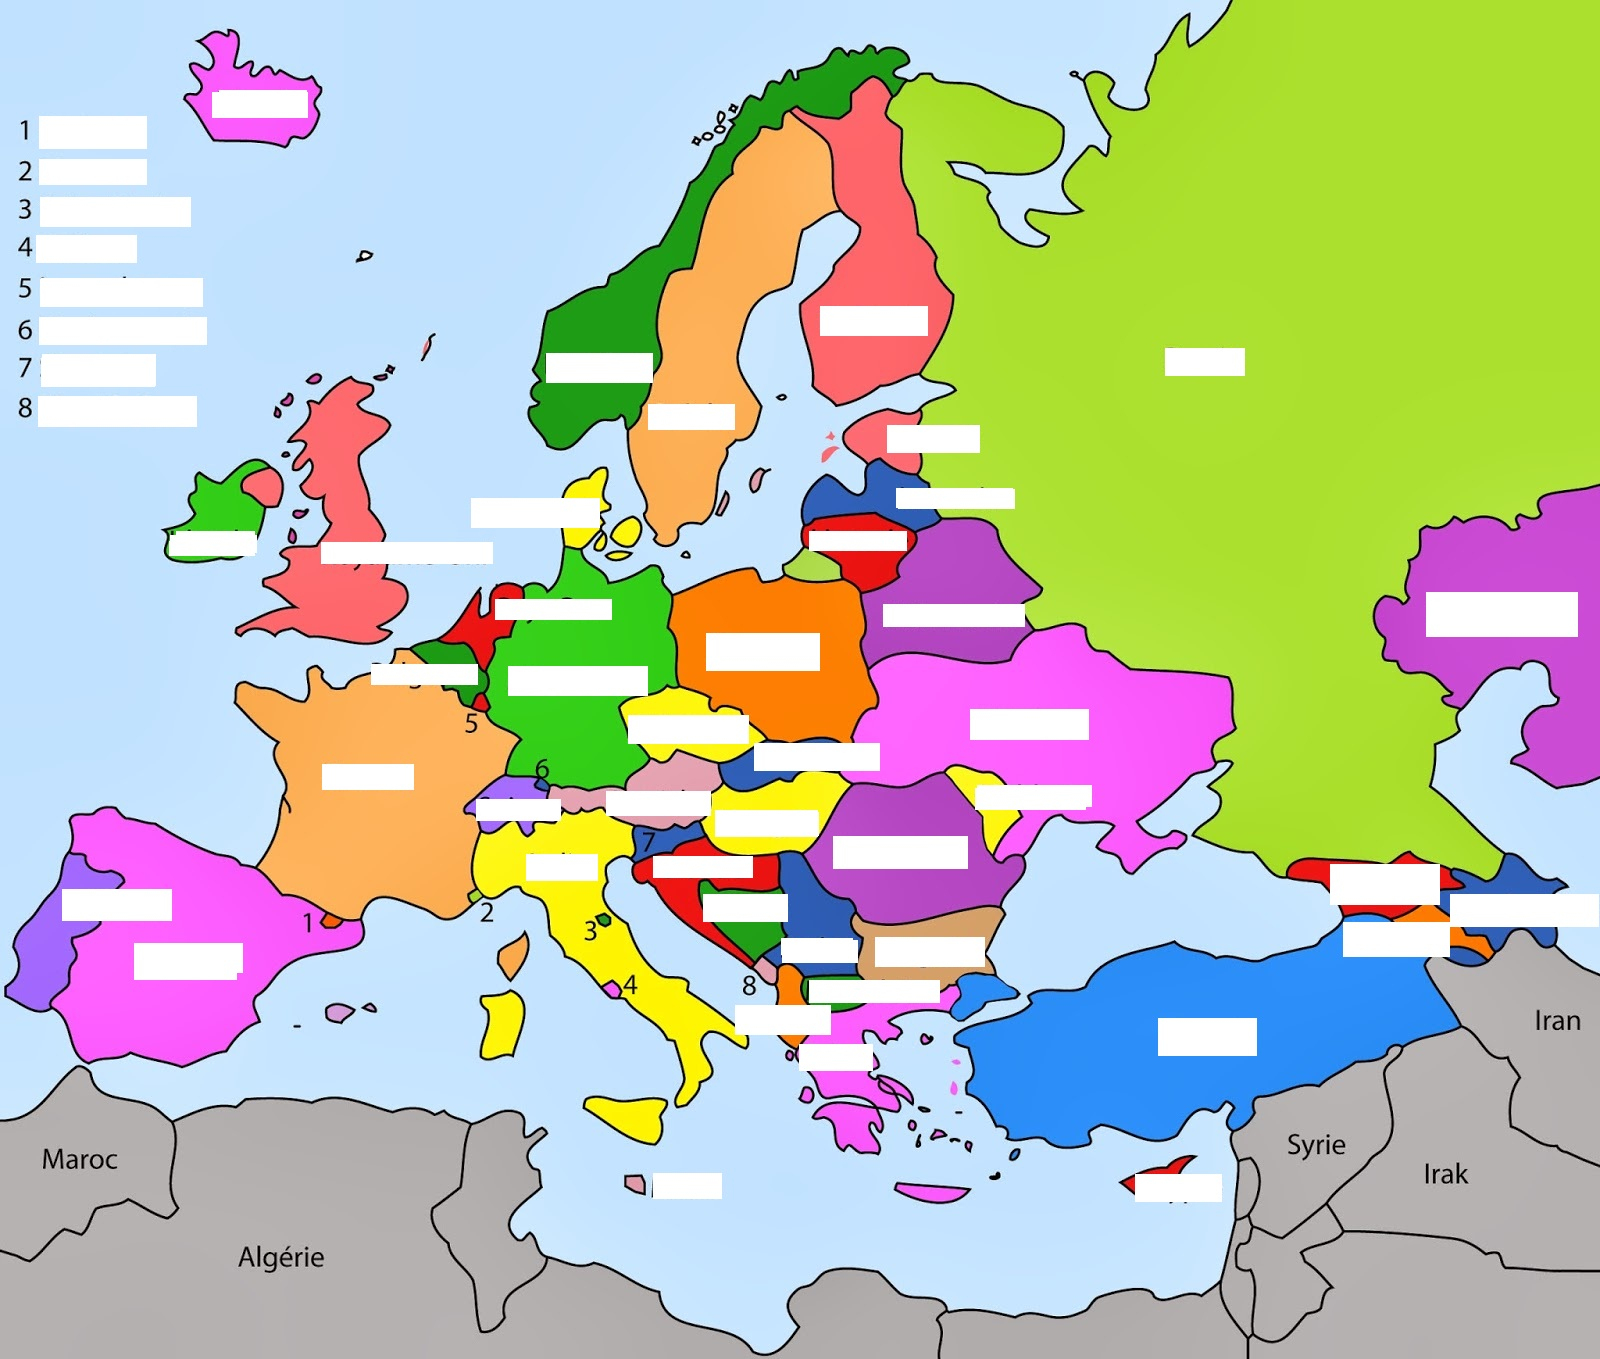 Les Pays De L&amp;#039;europe Et Leurs Capitales tout Pays D Europe Et Capitales 